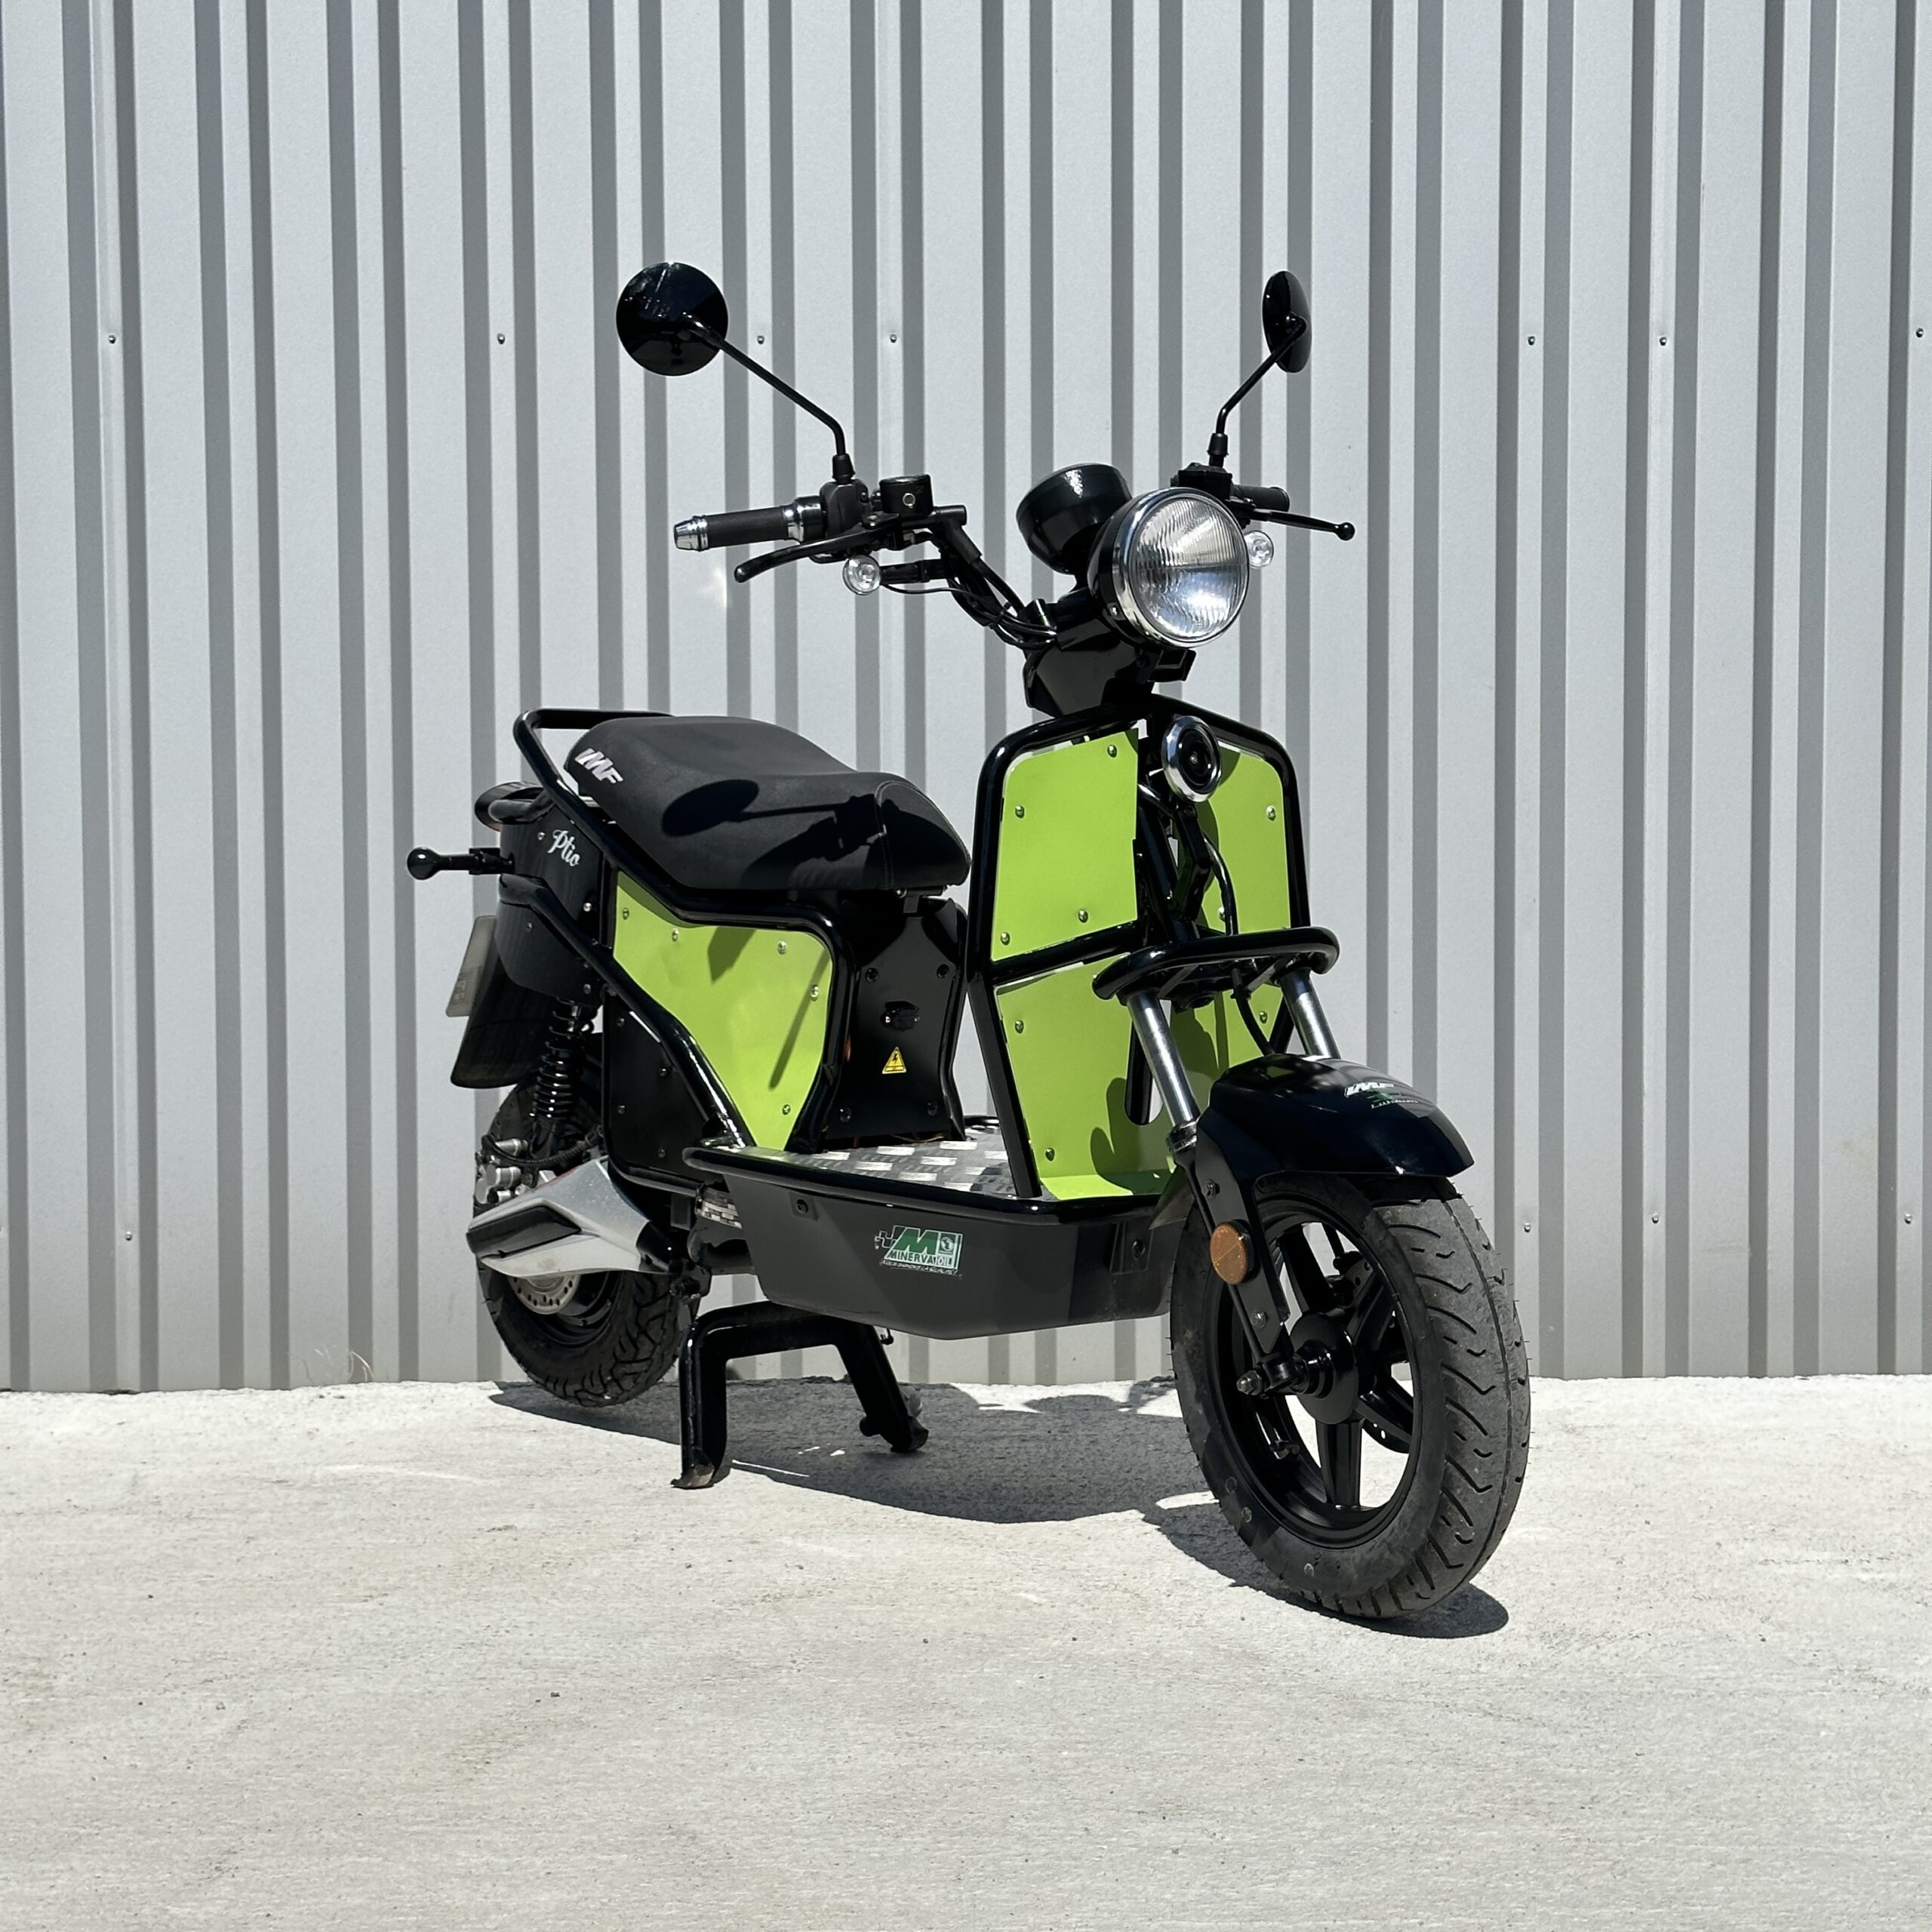 E-Ptio scooter électrique français reconditionné de la marque IMF Industrie, scooter utilisé par les Dominos Pizzas, scooter entièrement personnalisable, coloris vert de trois-quart